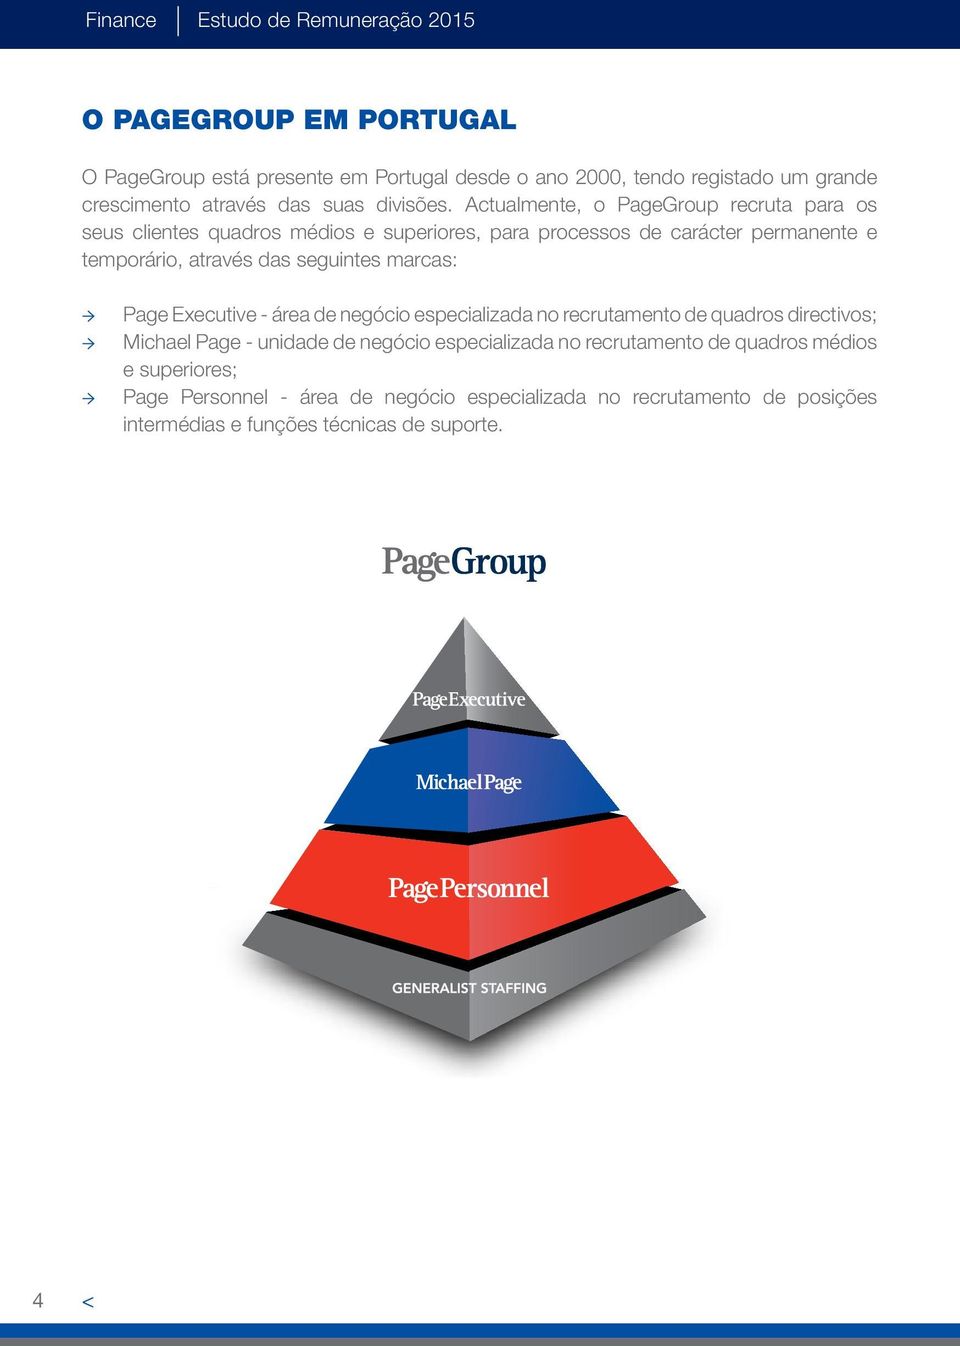 Actualmente, o PageGroup recruta para os seus clientes quadros médios e superiores, para processos de carácter permanente e temporário, através das seguintes